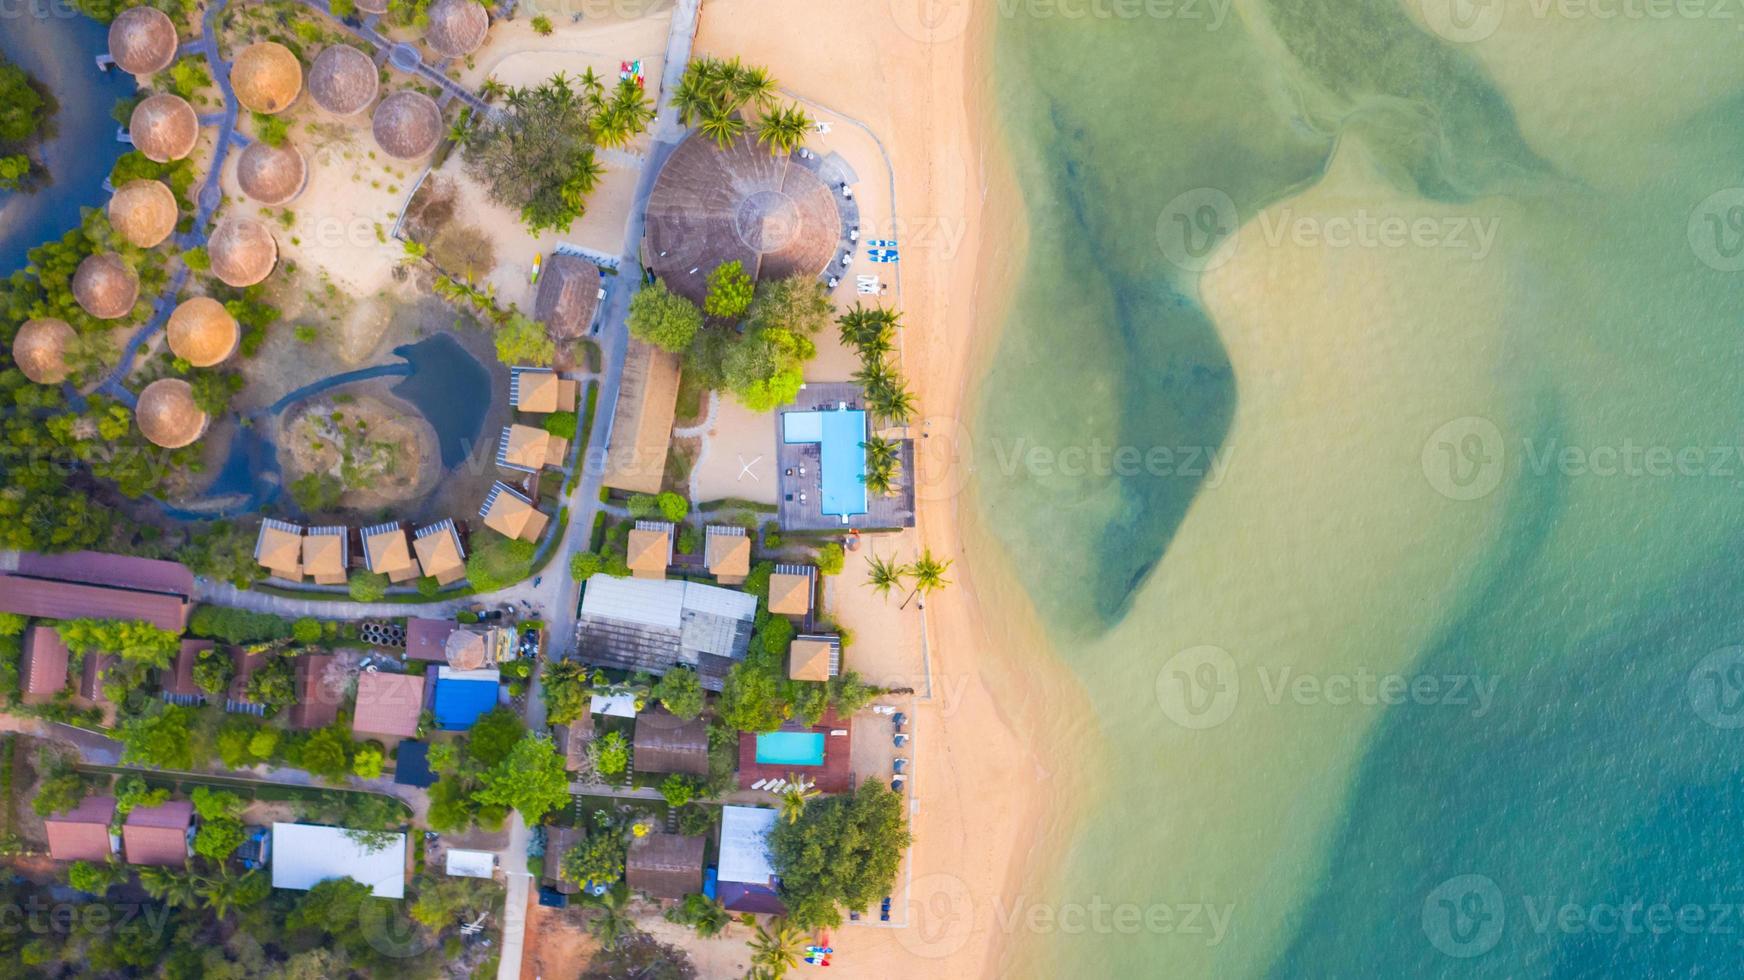 Flygfoto ovanifrån, semesterort och strand med smaragdblått vatten på det härliga tropiska havet i Thailand foto